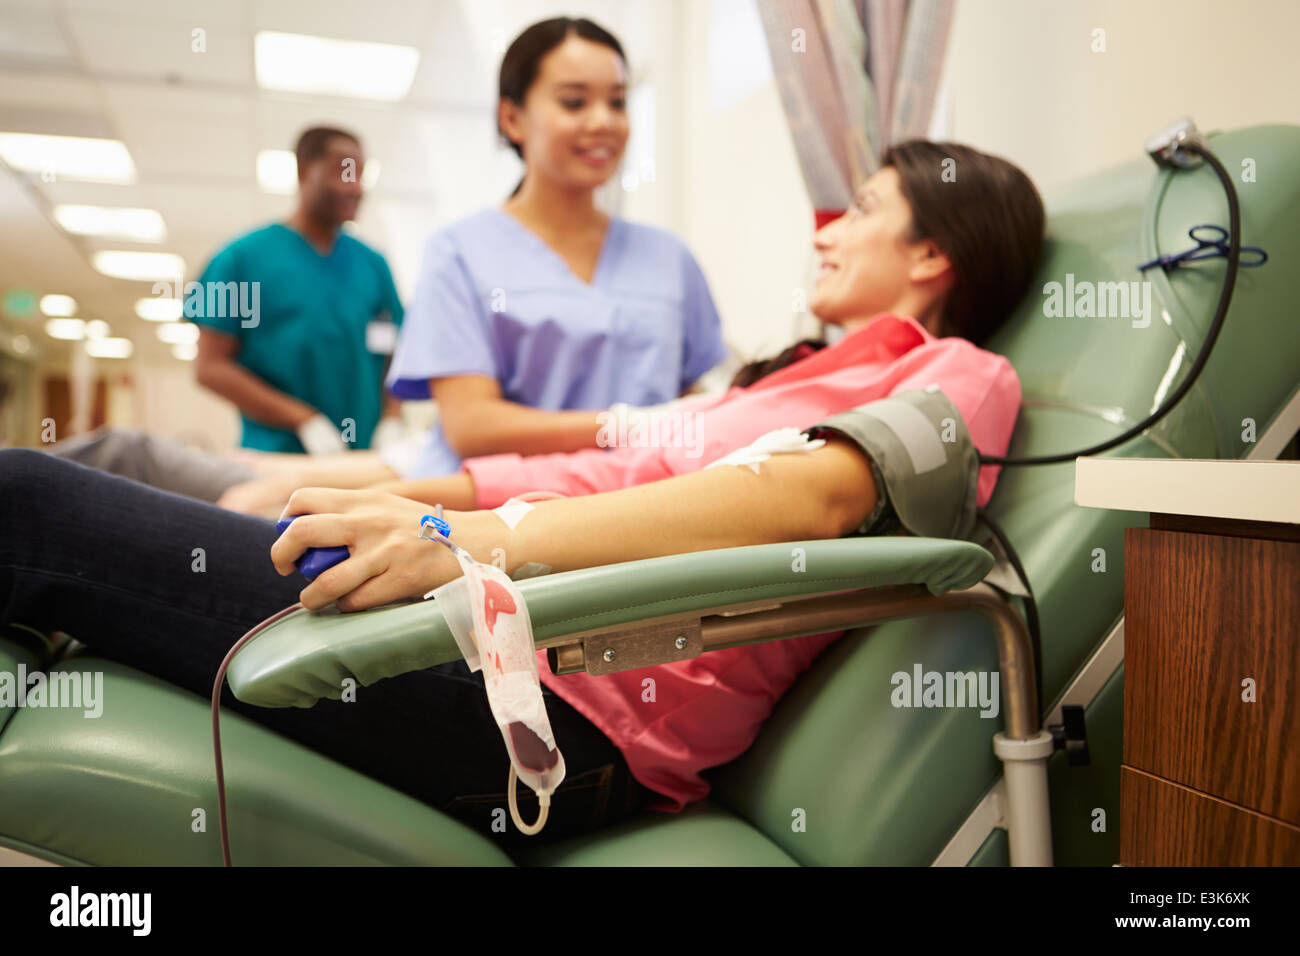 Haciendo Donación de donantes de sangre en el Hospital Foto de stock